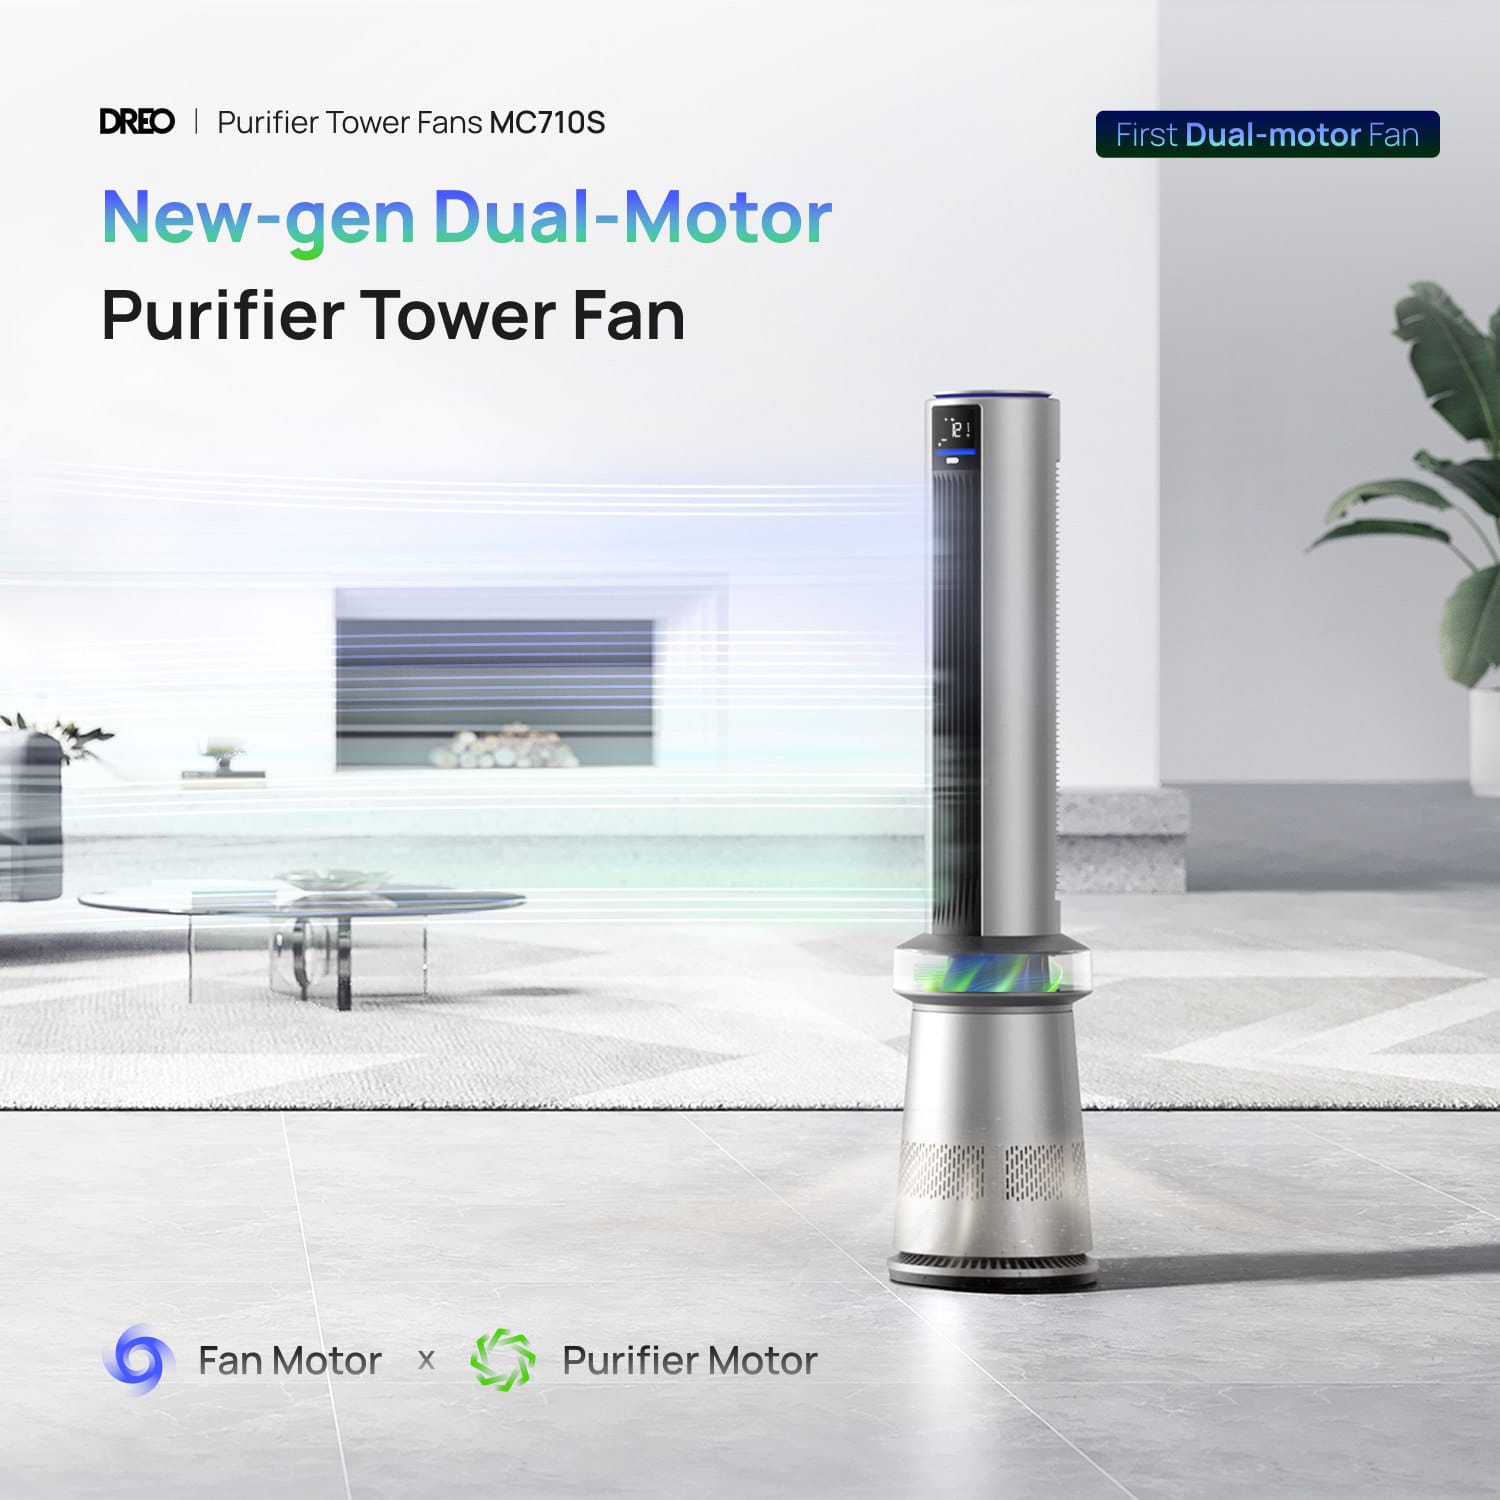 DREO announces a dual-motor purifier tower fan & smart polyfan